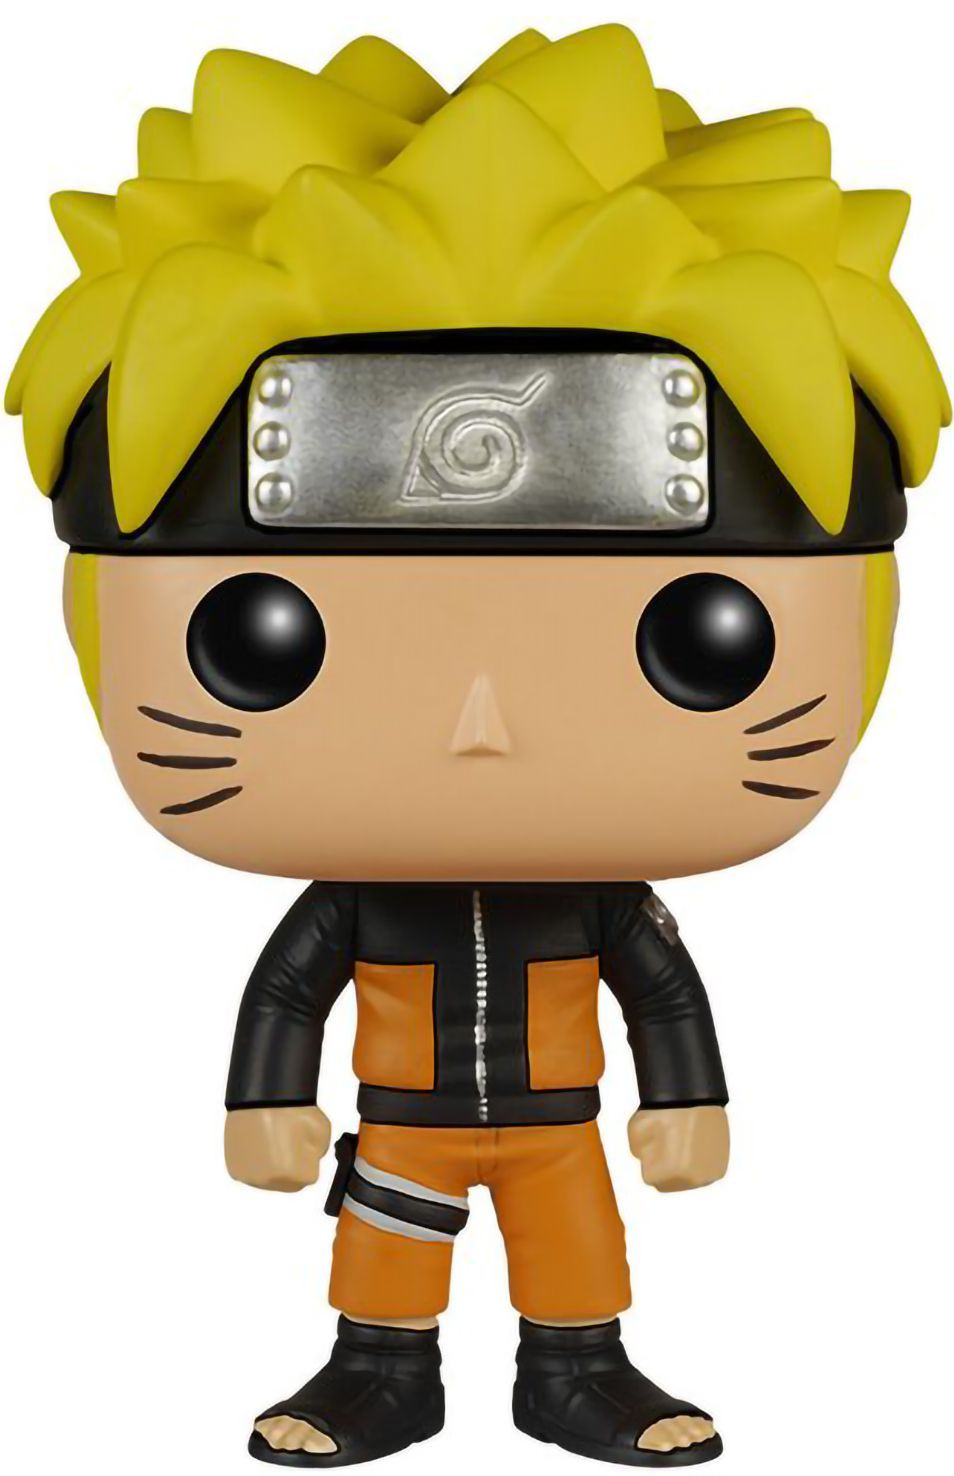   Naruto Shippuden  Naruto  Sasuke